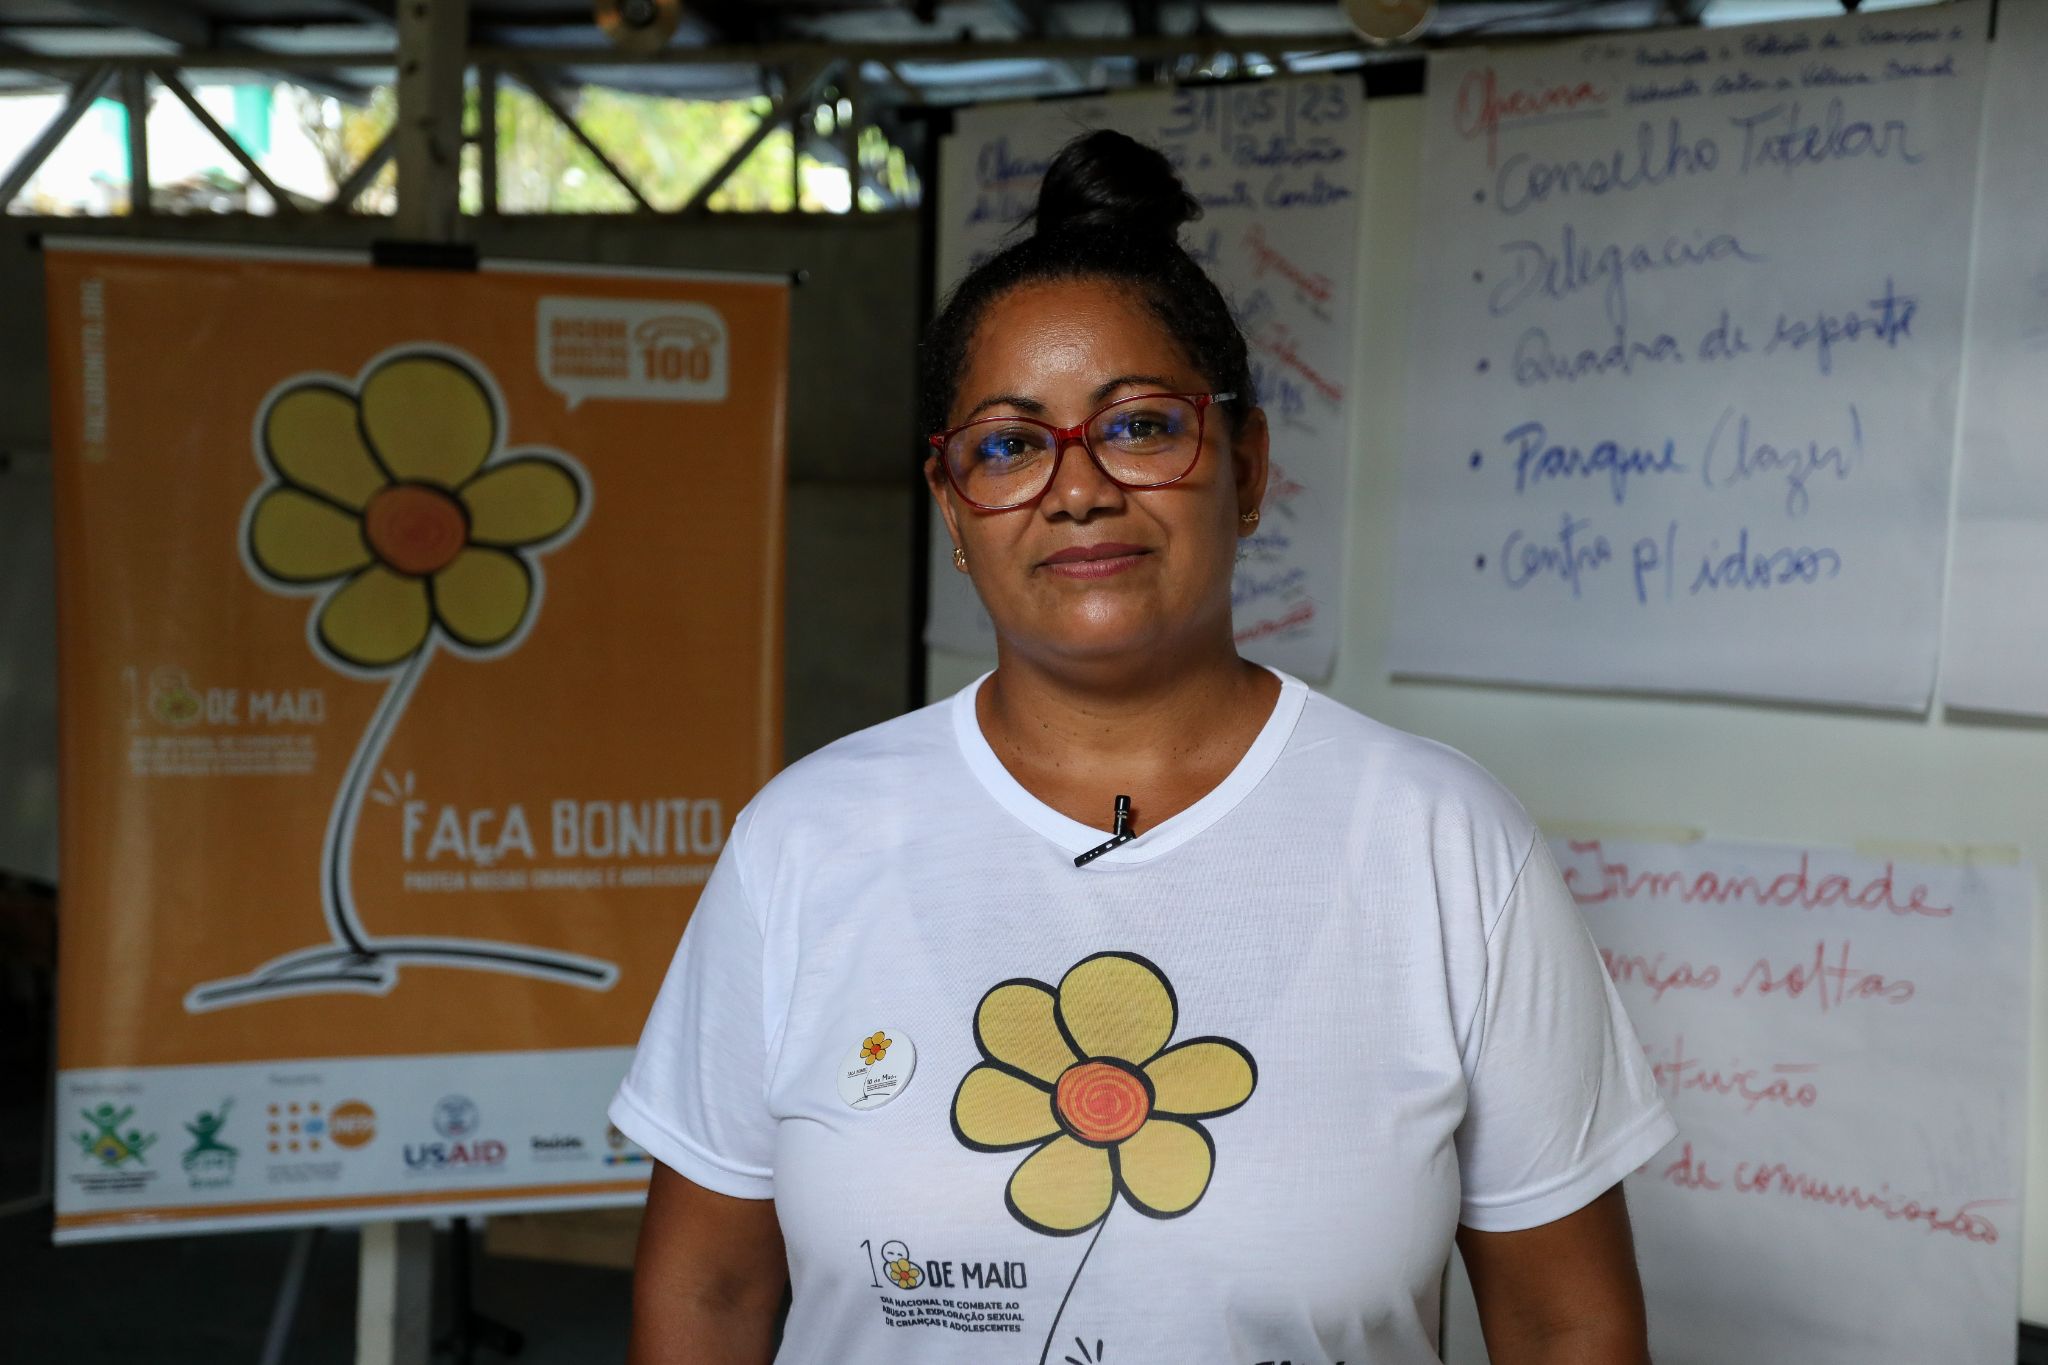 Liderança na comunidade, Sâmia Gonzaga da Silva foi uma das participantes. Foto: ©UNFPA Brasil/Michael Dantas